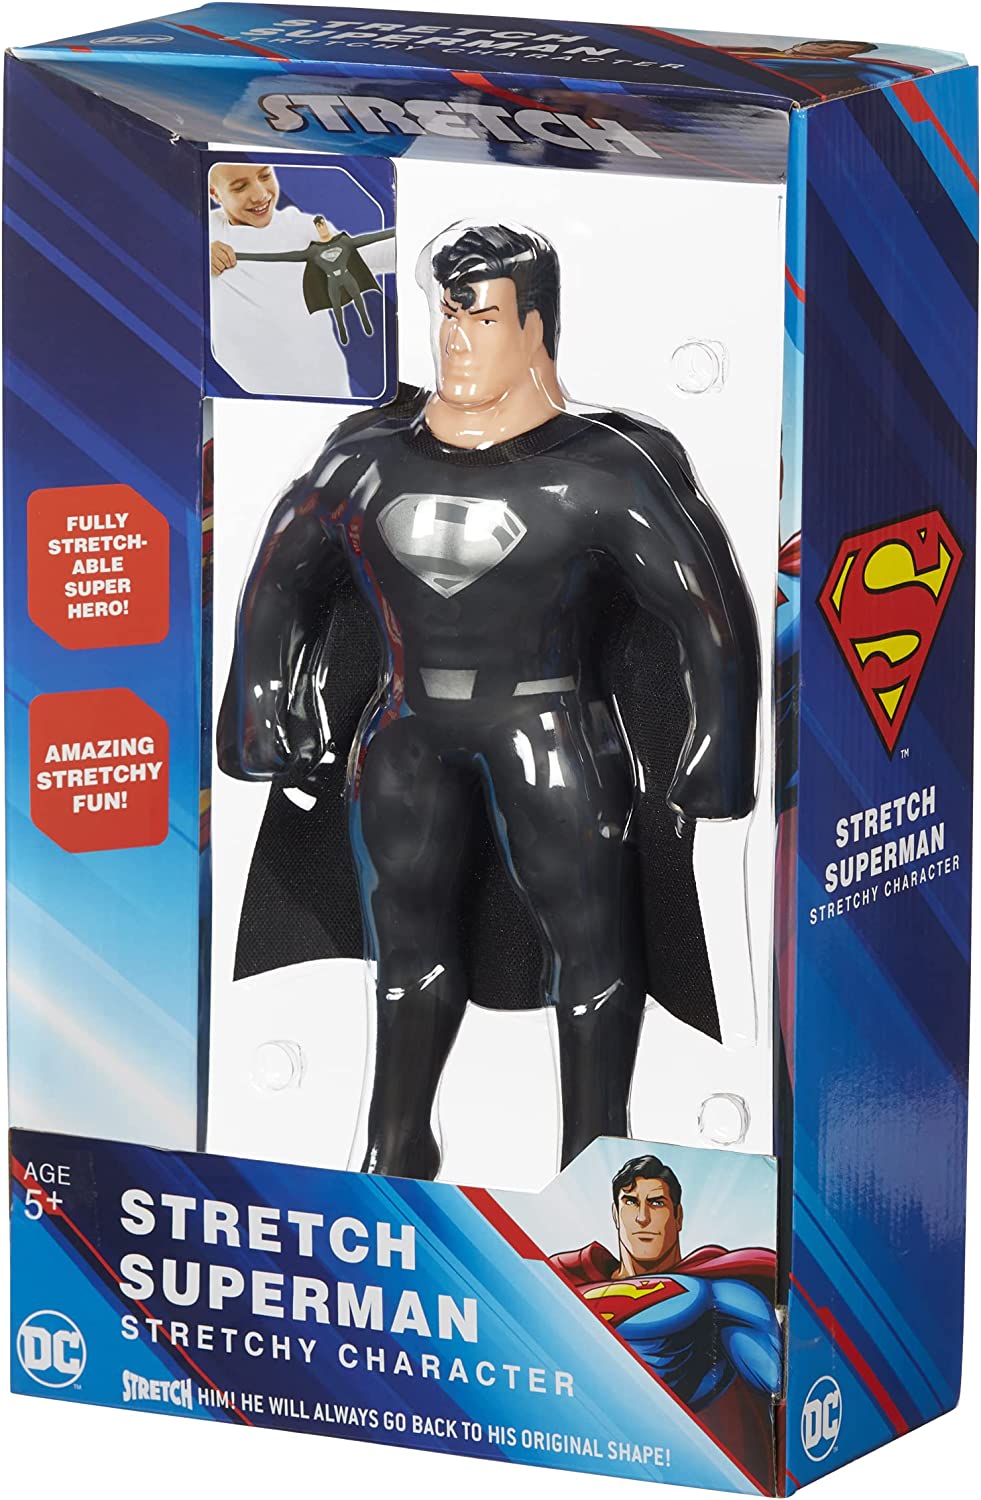 Stretch 07696 Superman, groß, unglaublicher Spaß. DC Boys anwesend. Superhelden-Spielzeug